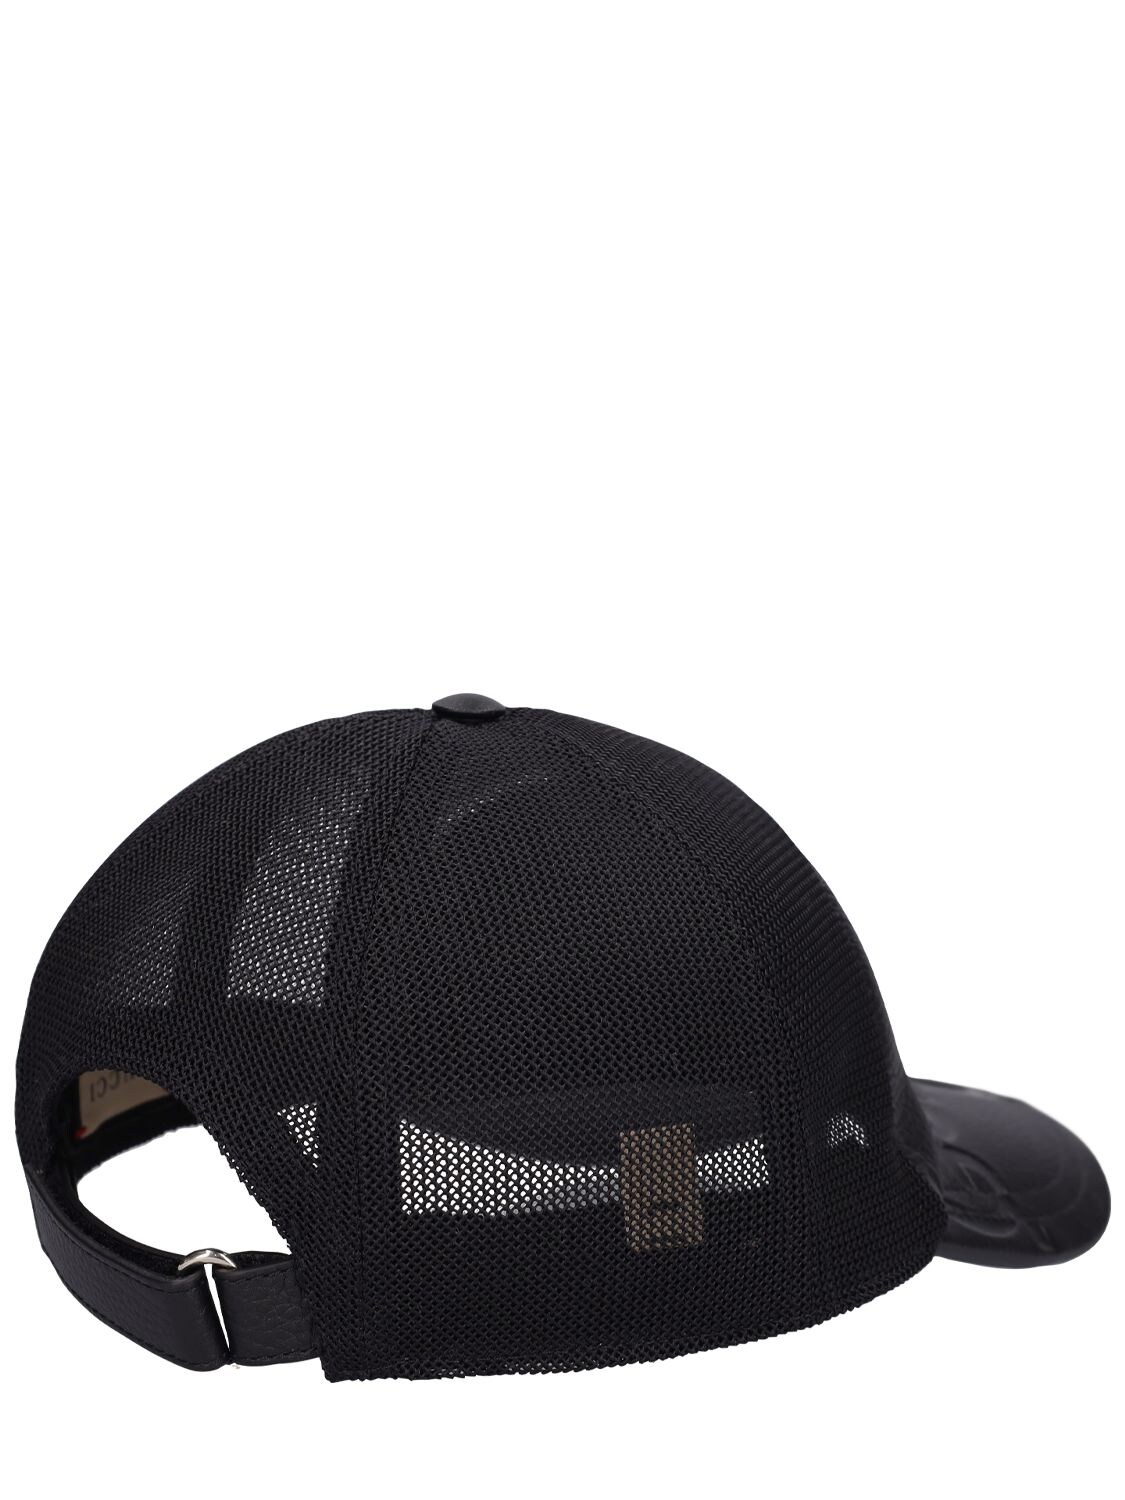 Jumbo GG baseball hat in black